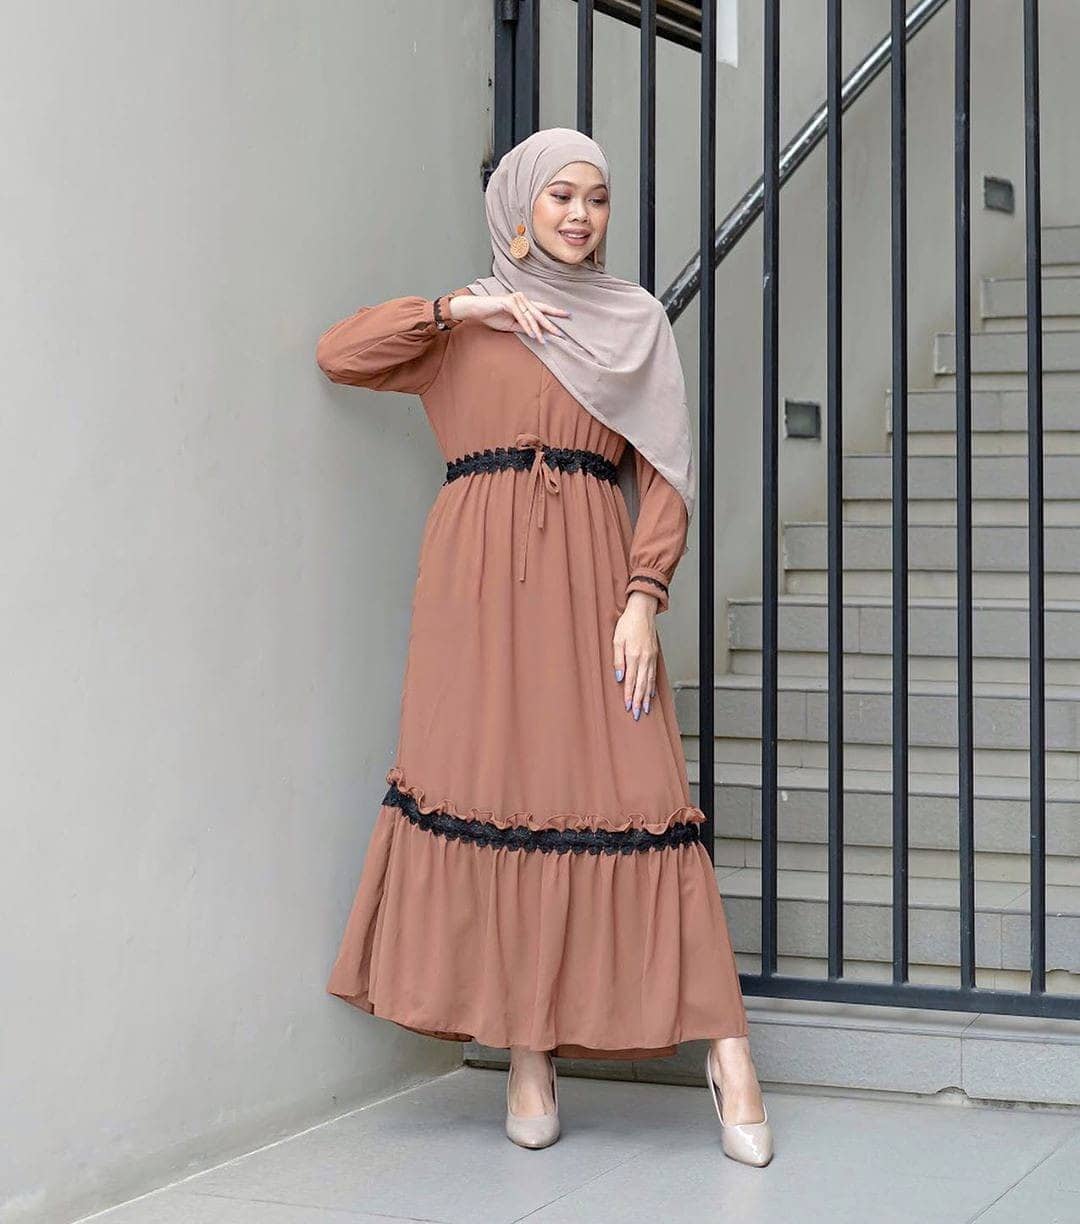 Baju Muslim Modern SYAKILA MAXI IK Bahan WOLFICE Gamis Wanita Terbaru 2020 Modern Remaja Gamis Wanita Gamis Wanita Murah Simple